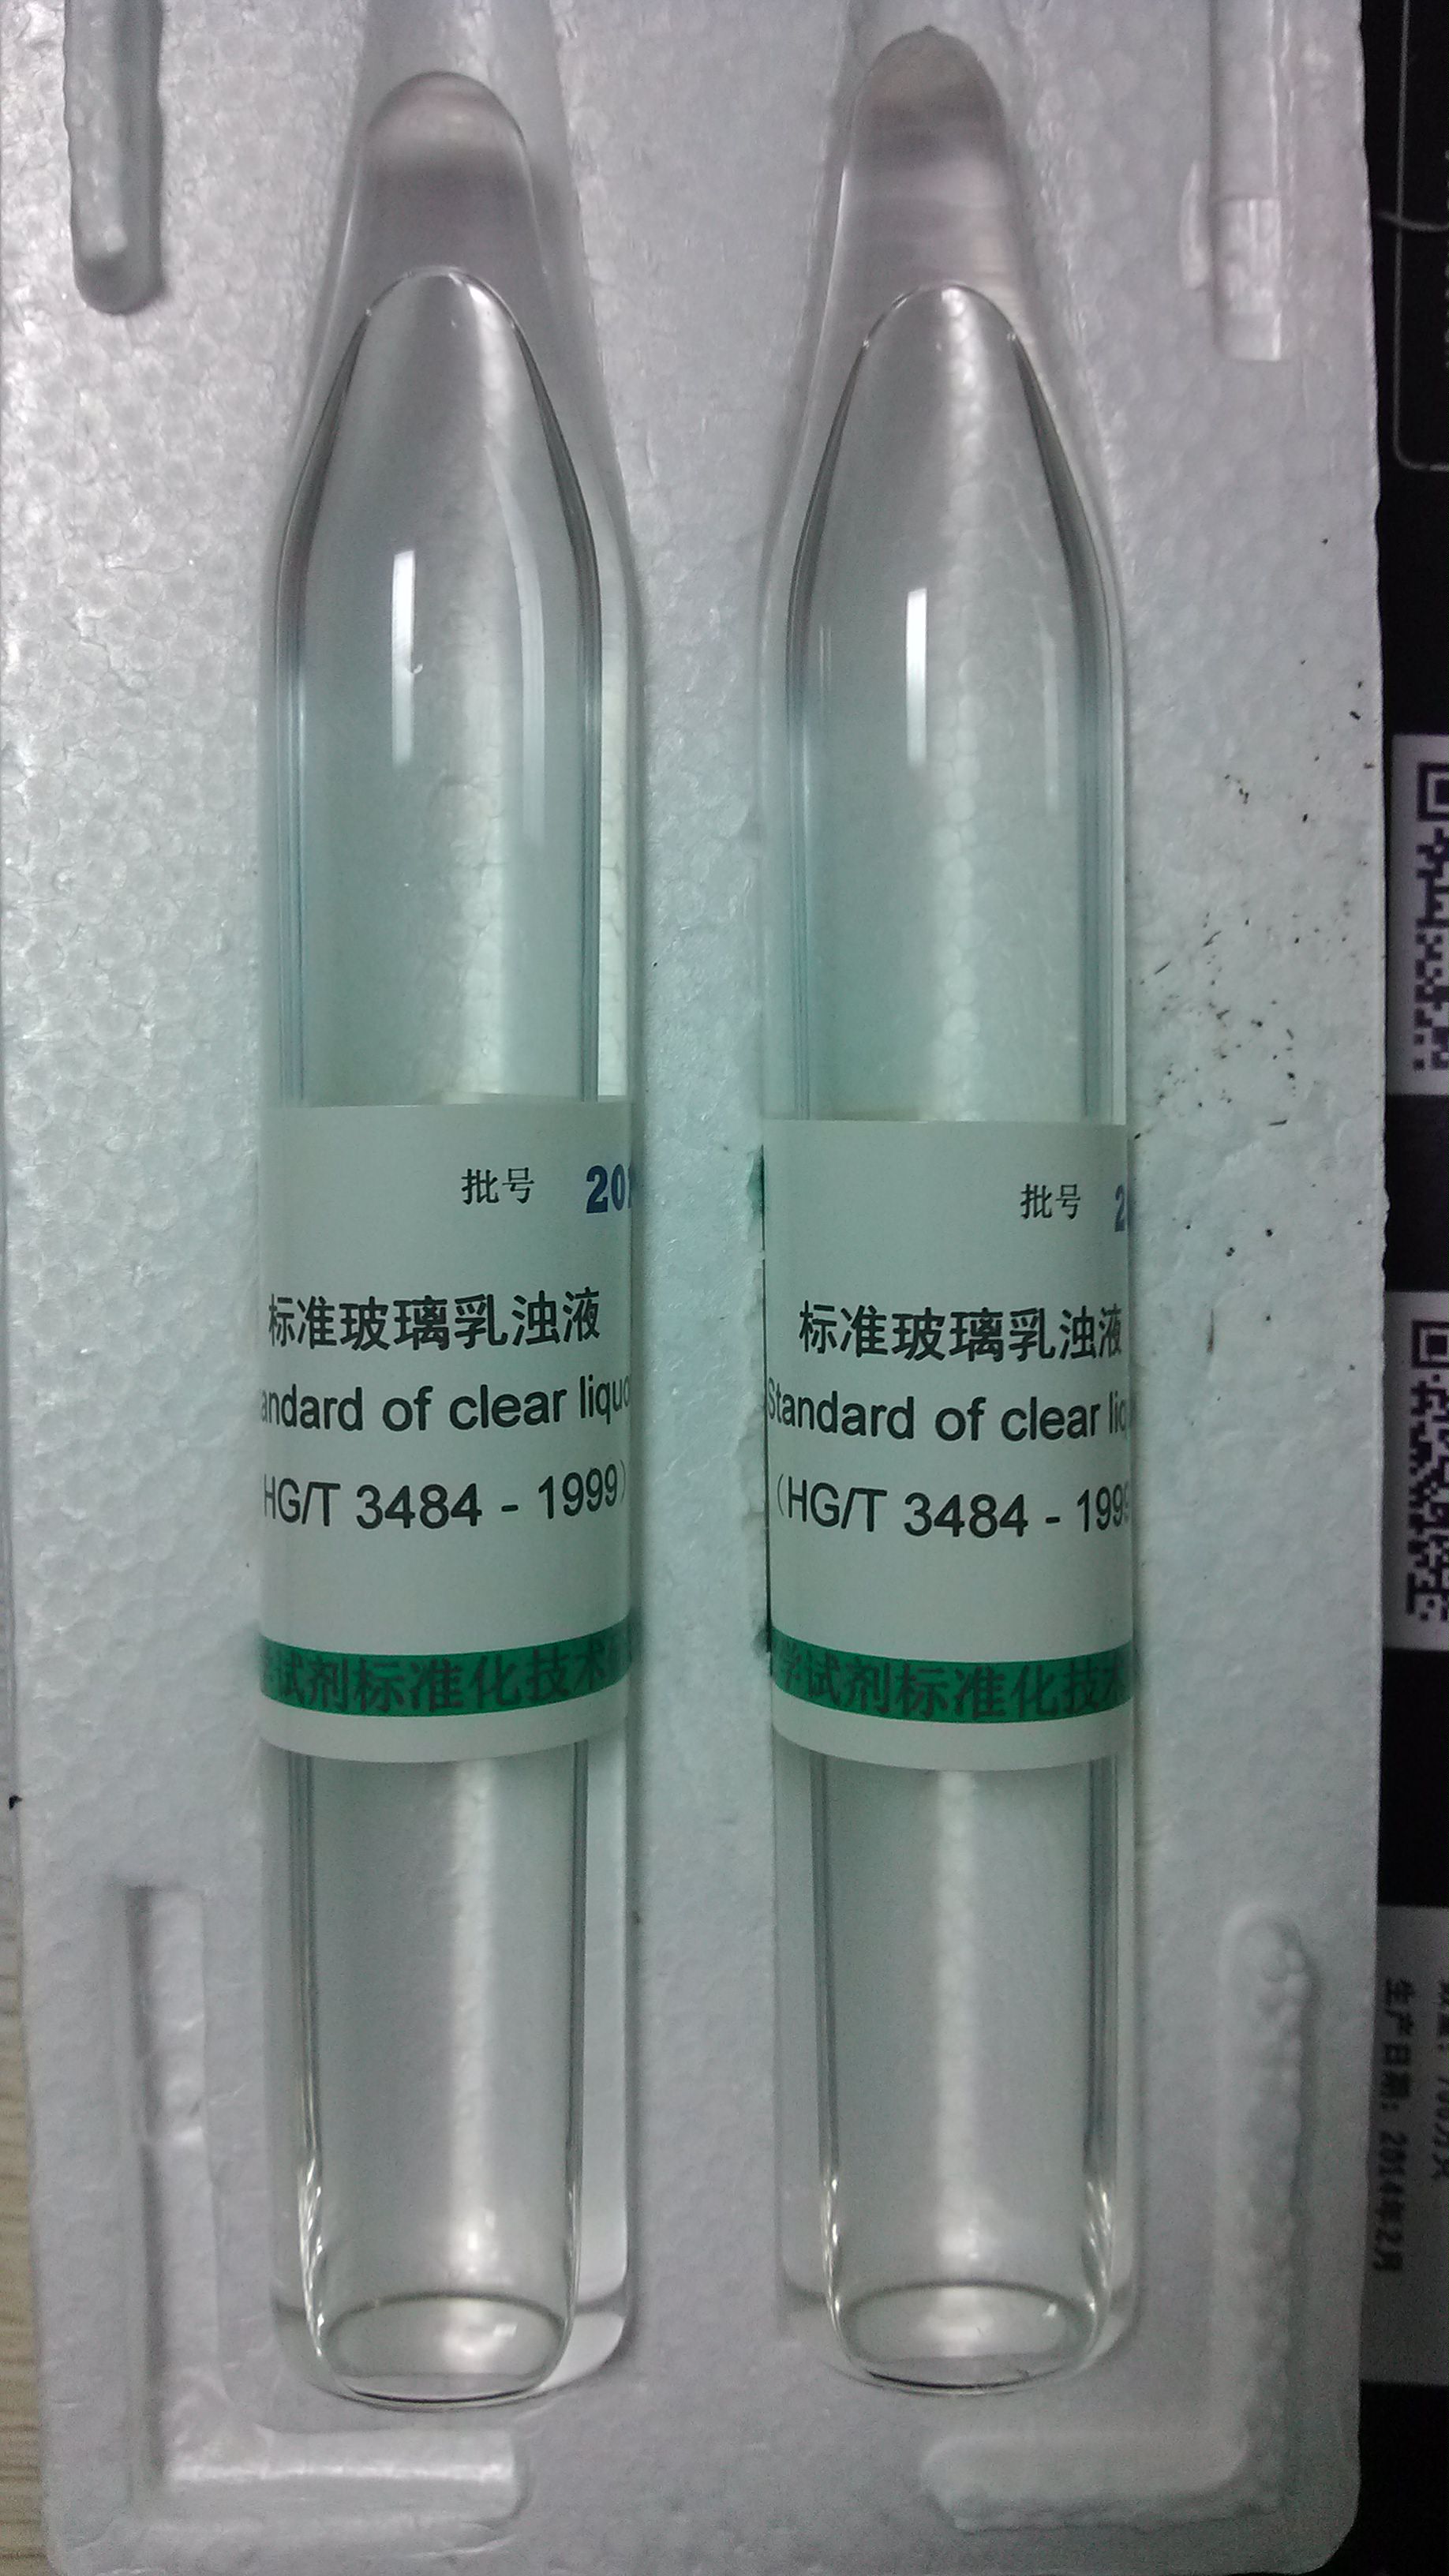 标准玻璃乳浊液,hg/t 3484